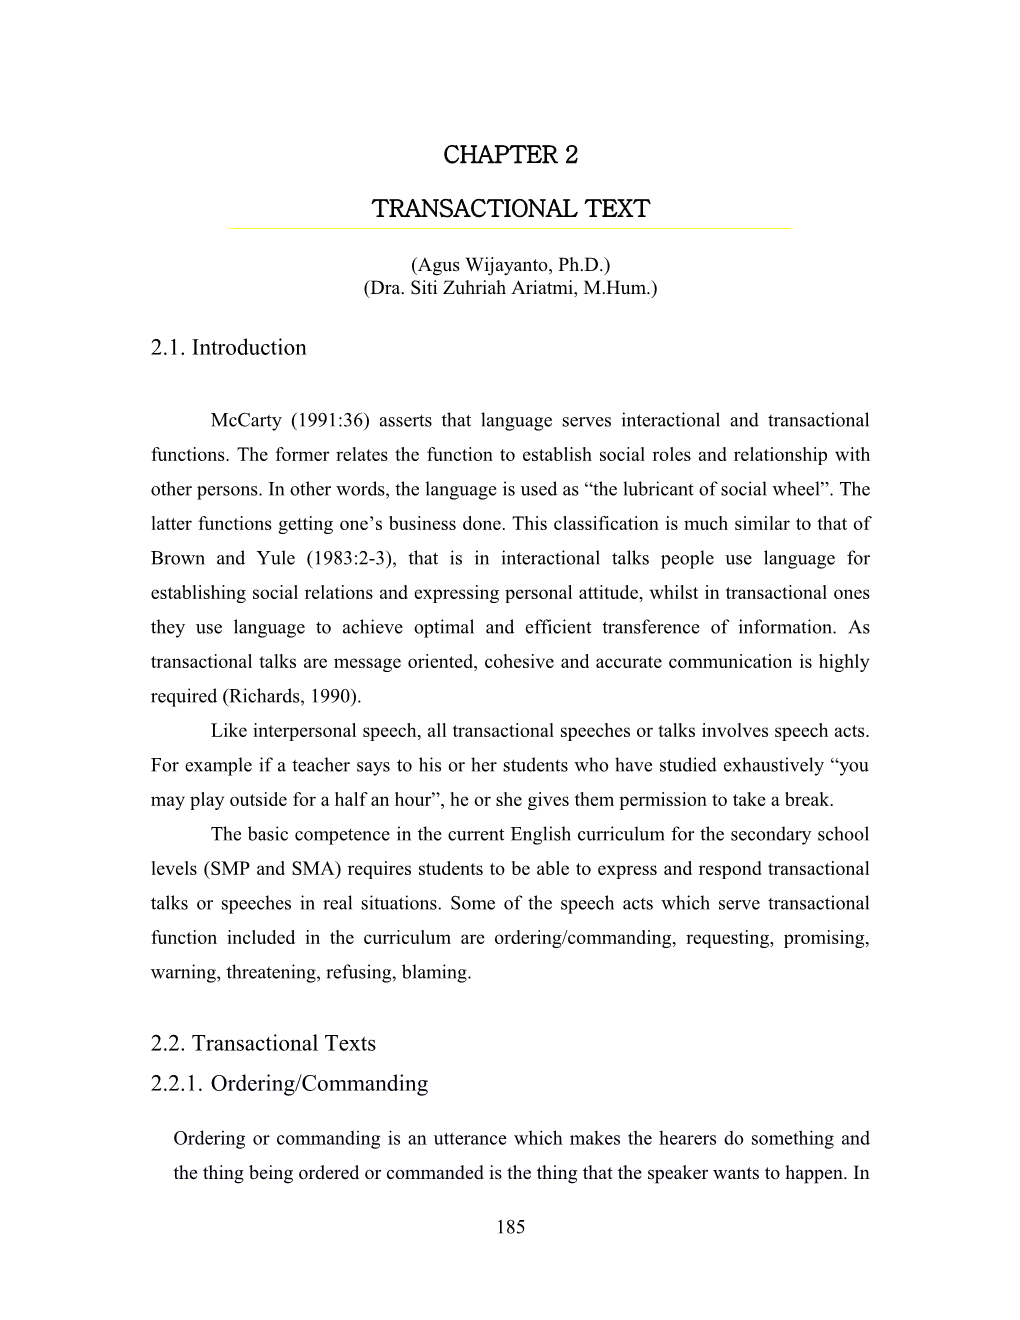 Transactional Text